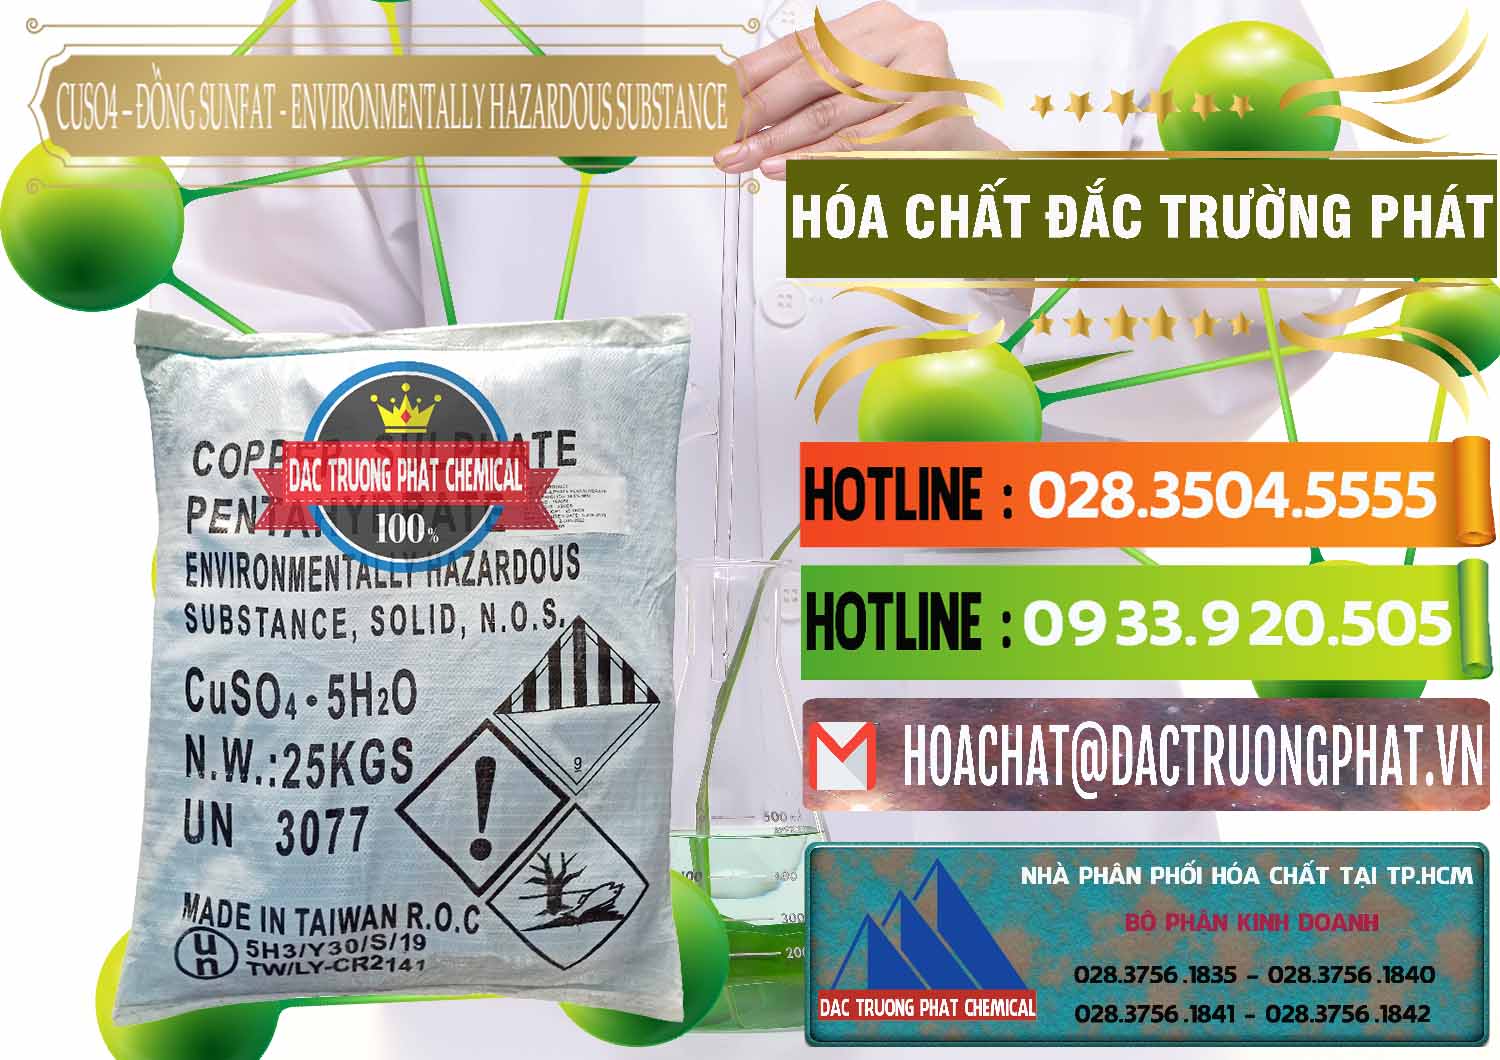 Nơi chuyên cung ứng ( bán ) CuSO4 – Đồng Sunfat Đài Loan Taiwan - 0059 - Chuyên cung cấp - phân phối hóa chất tại TP.HCM - cungcaphoachat.com.vn